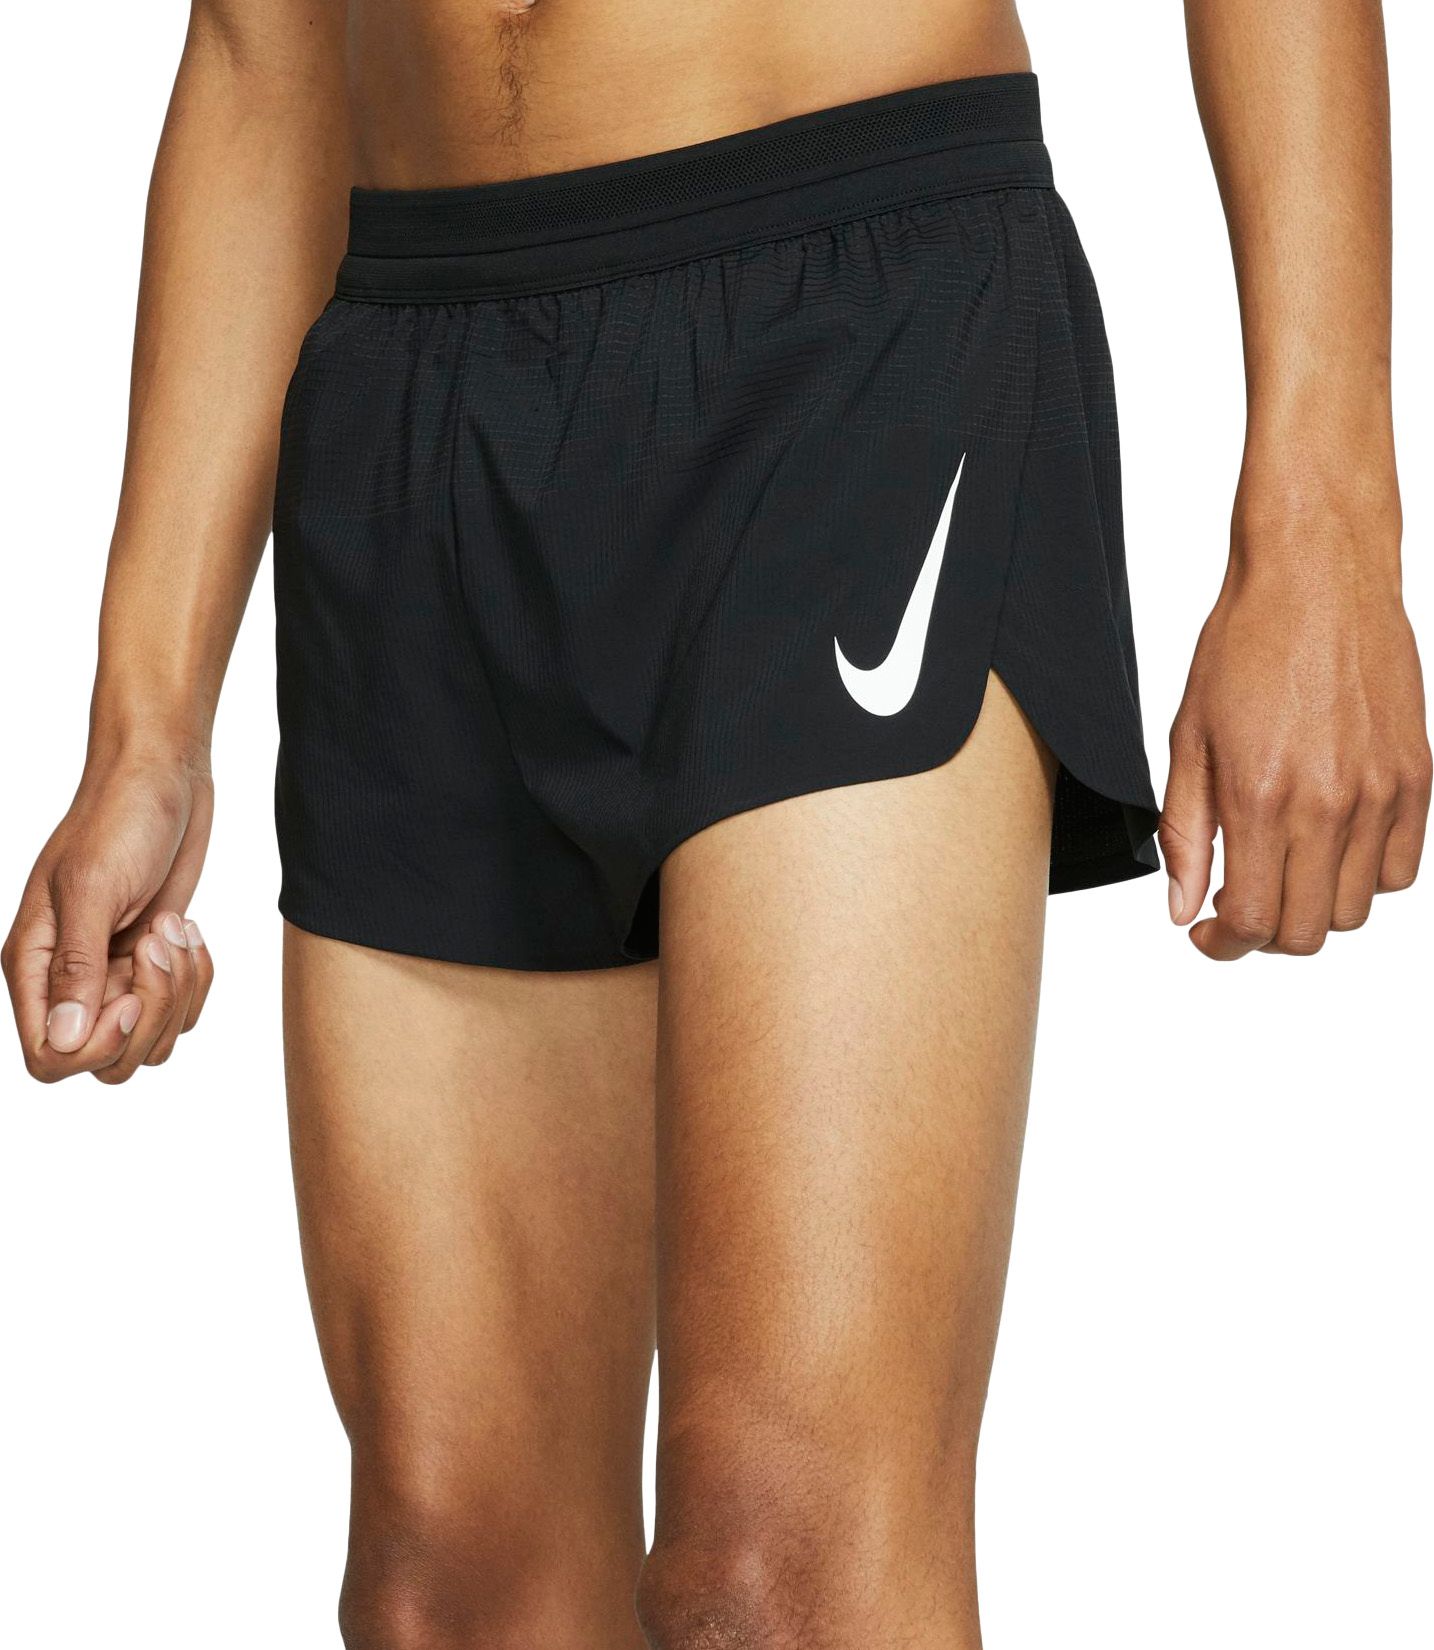 nike men's 3 inch running shorts